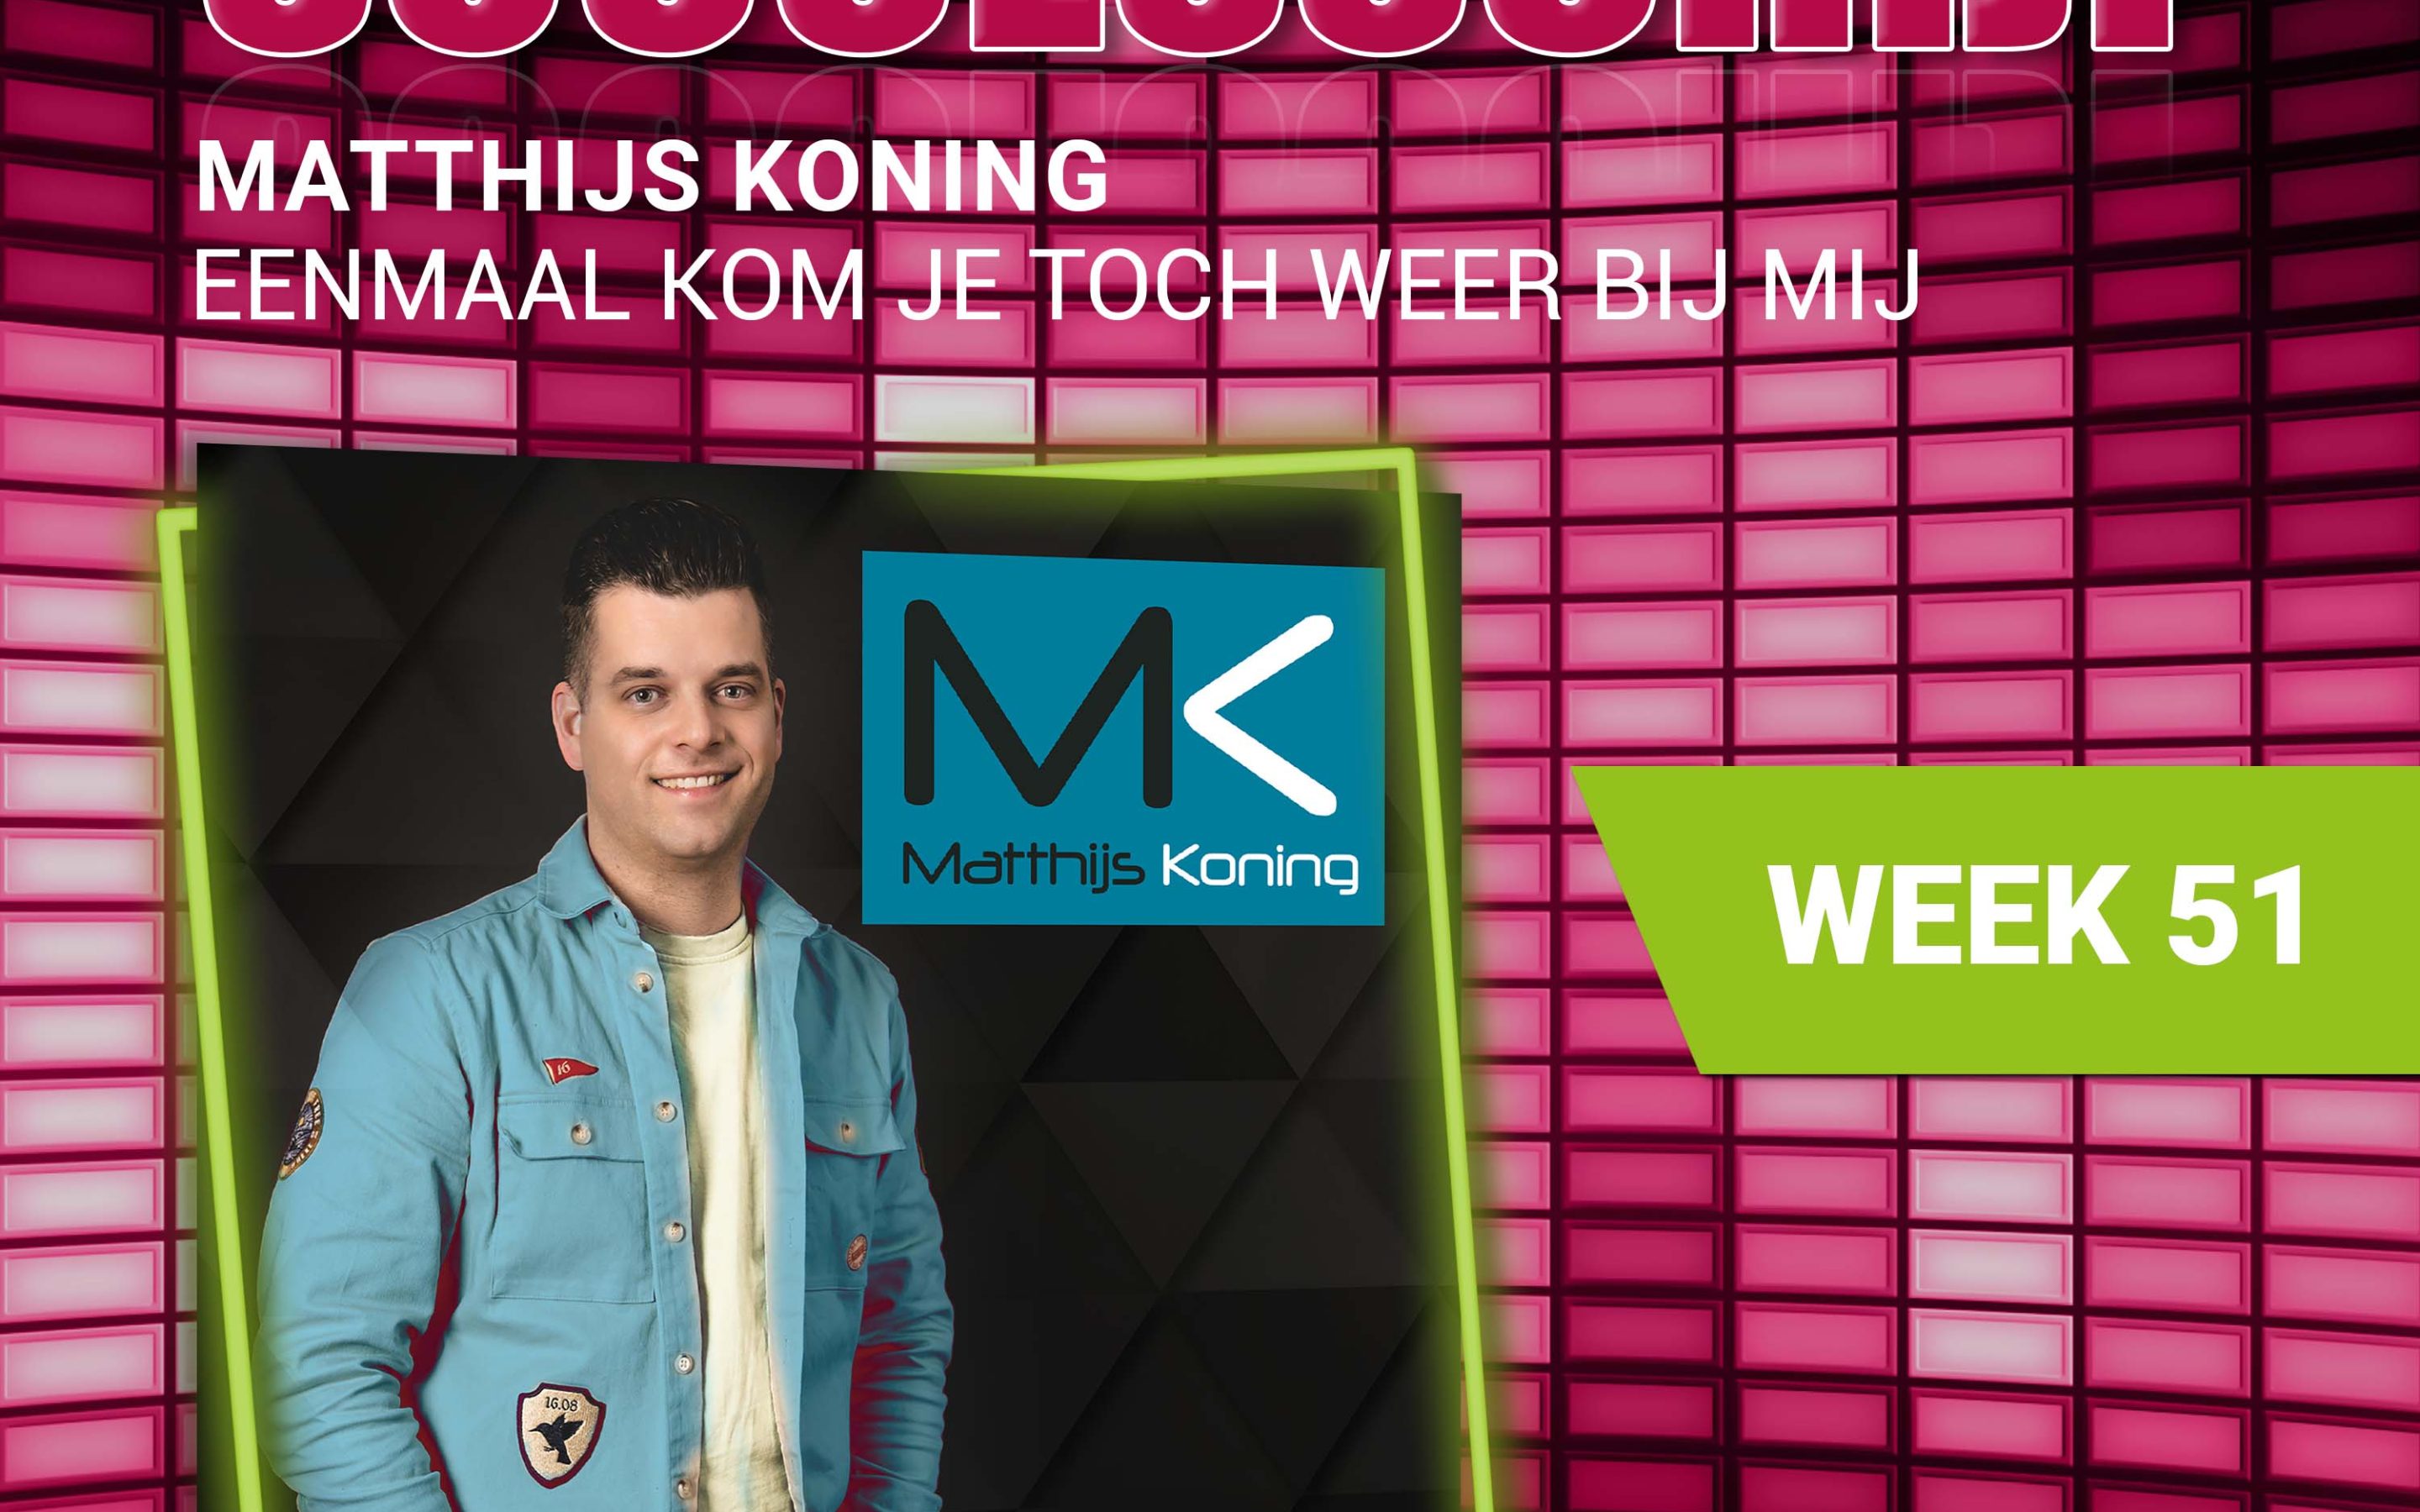 Matthijs Koning – nieuwe successchijf week 51